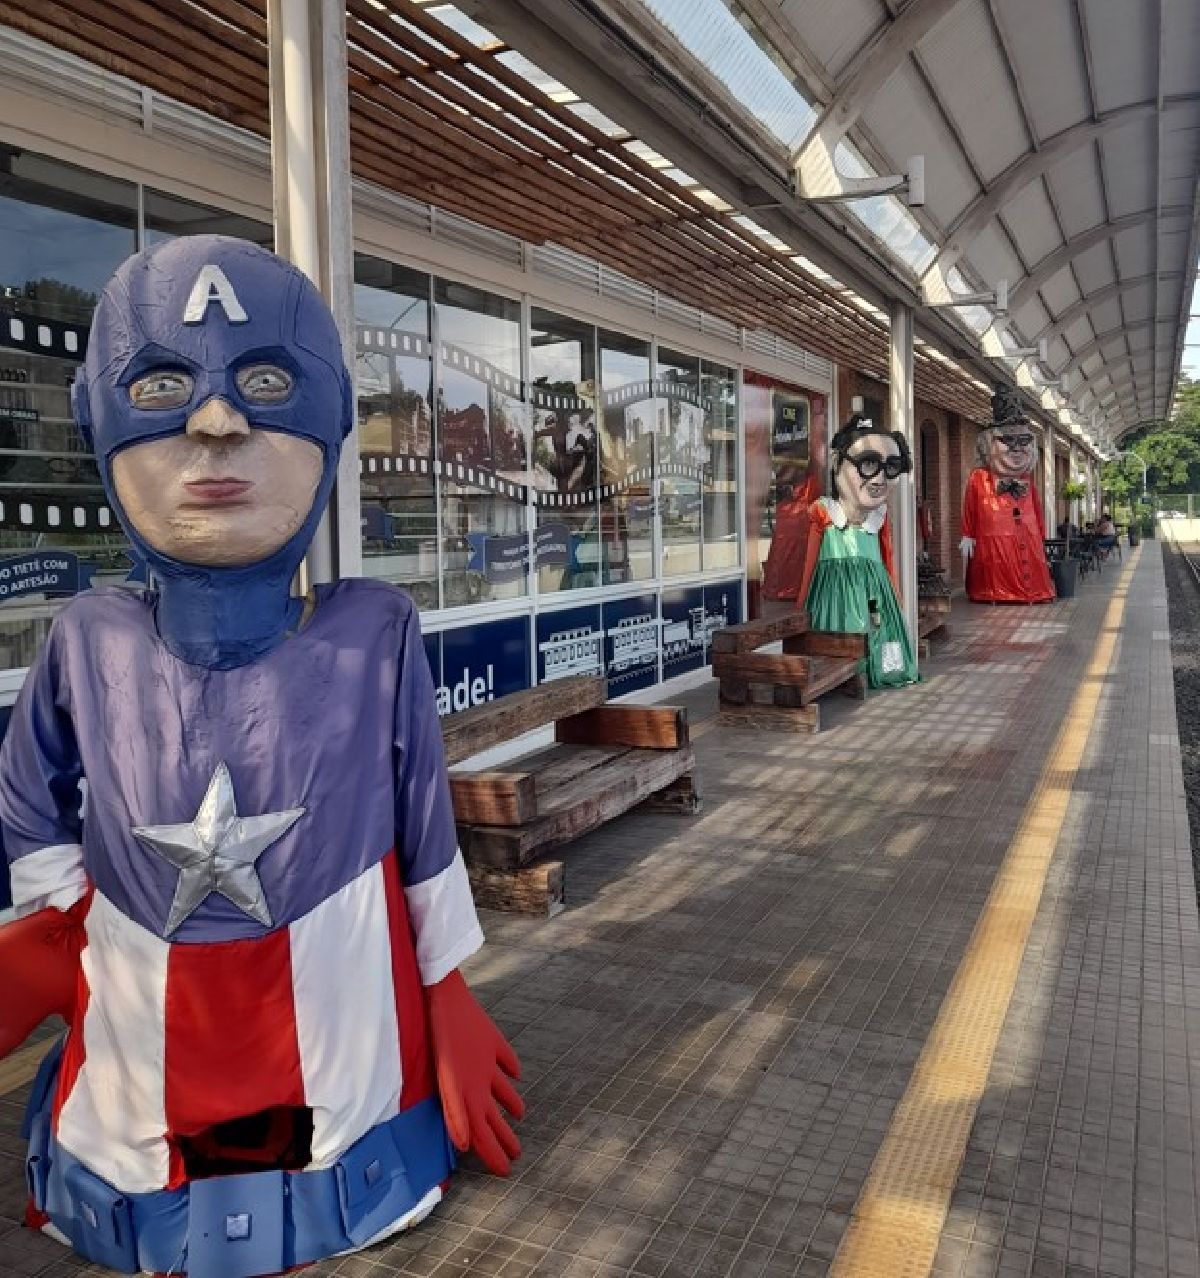 Bonecos gigantes de Salto são o destaque do Carnaval no Trem Republicano